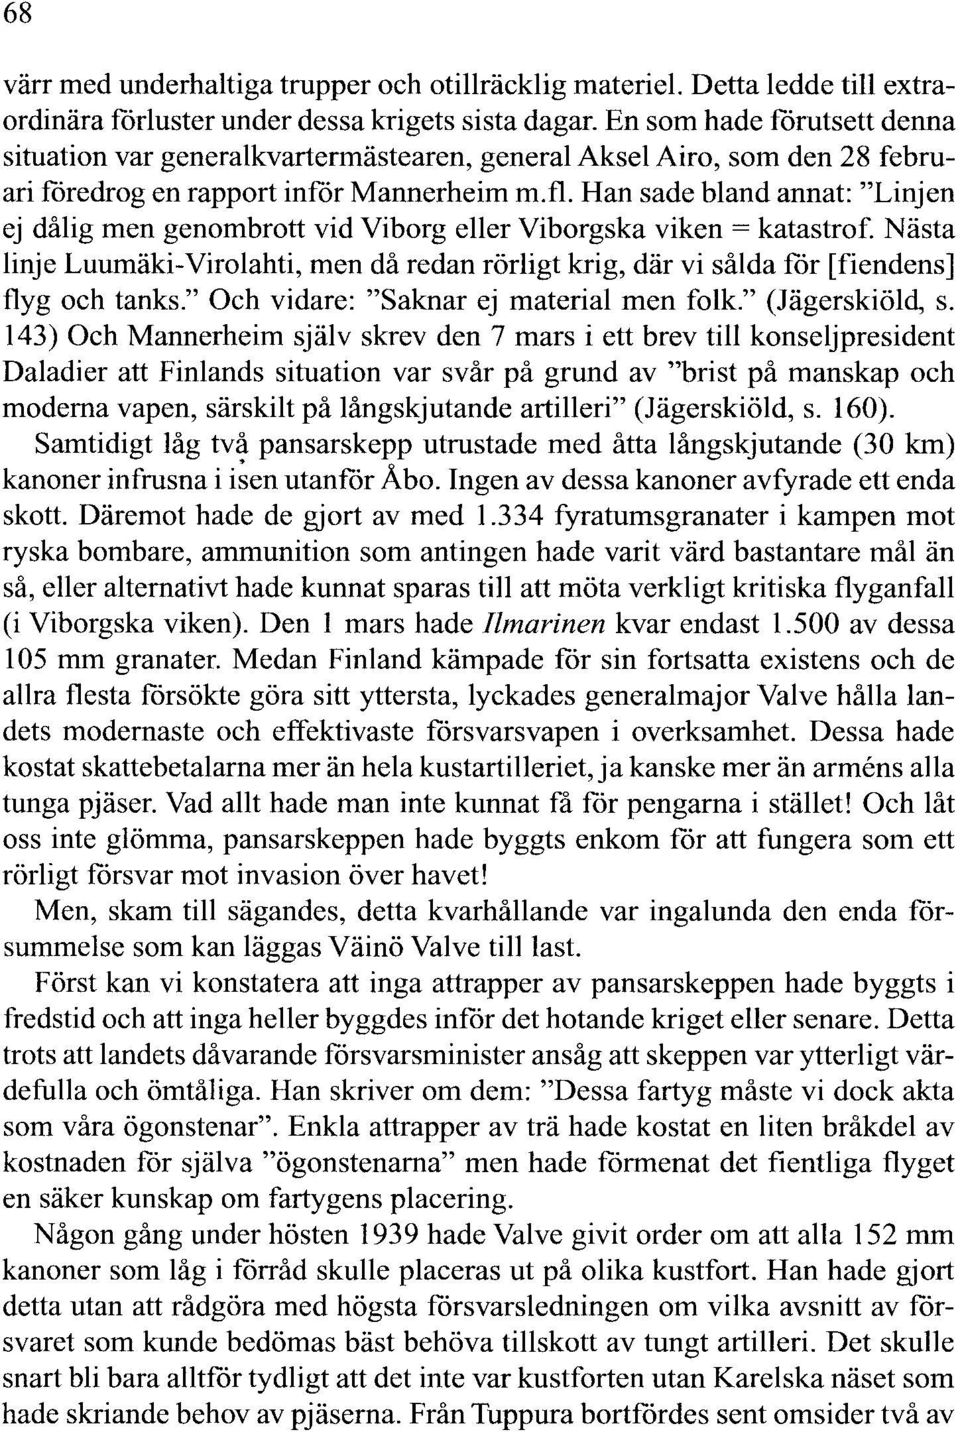 Han sade bland annat: "Linjen ej dålig men genombrott vid Viborg eller Viborgska viken = katastrof.